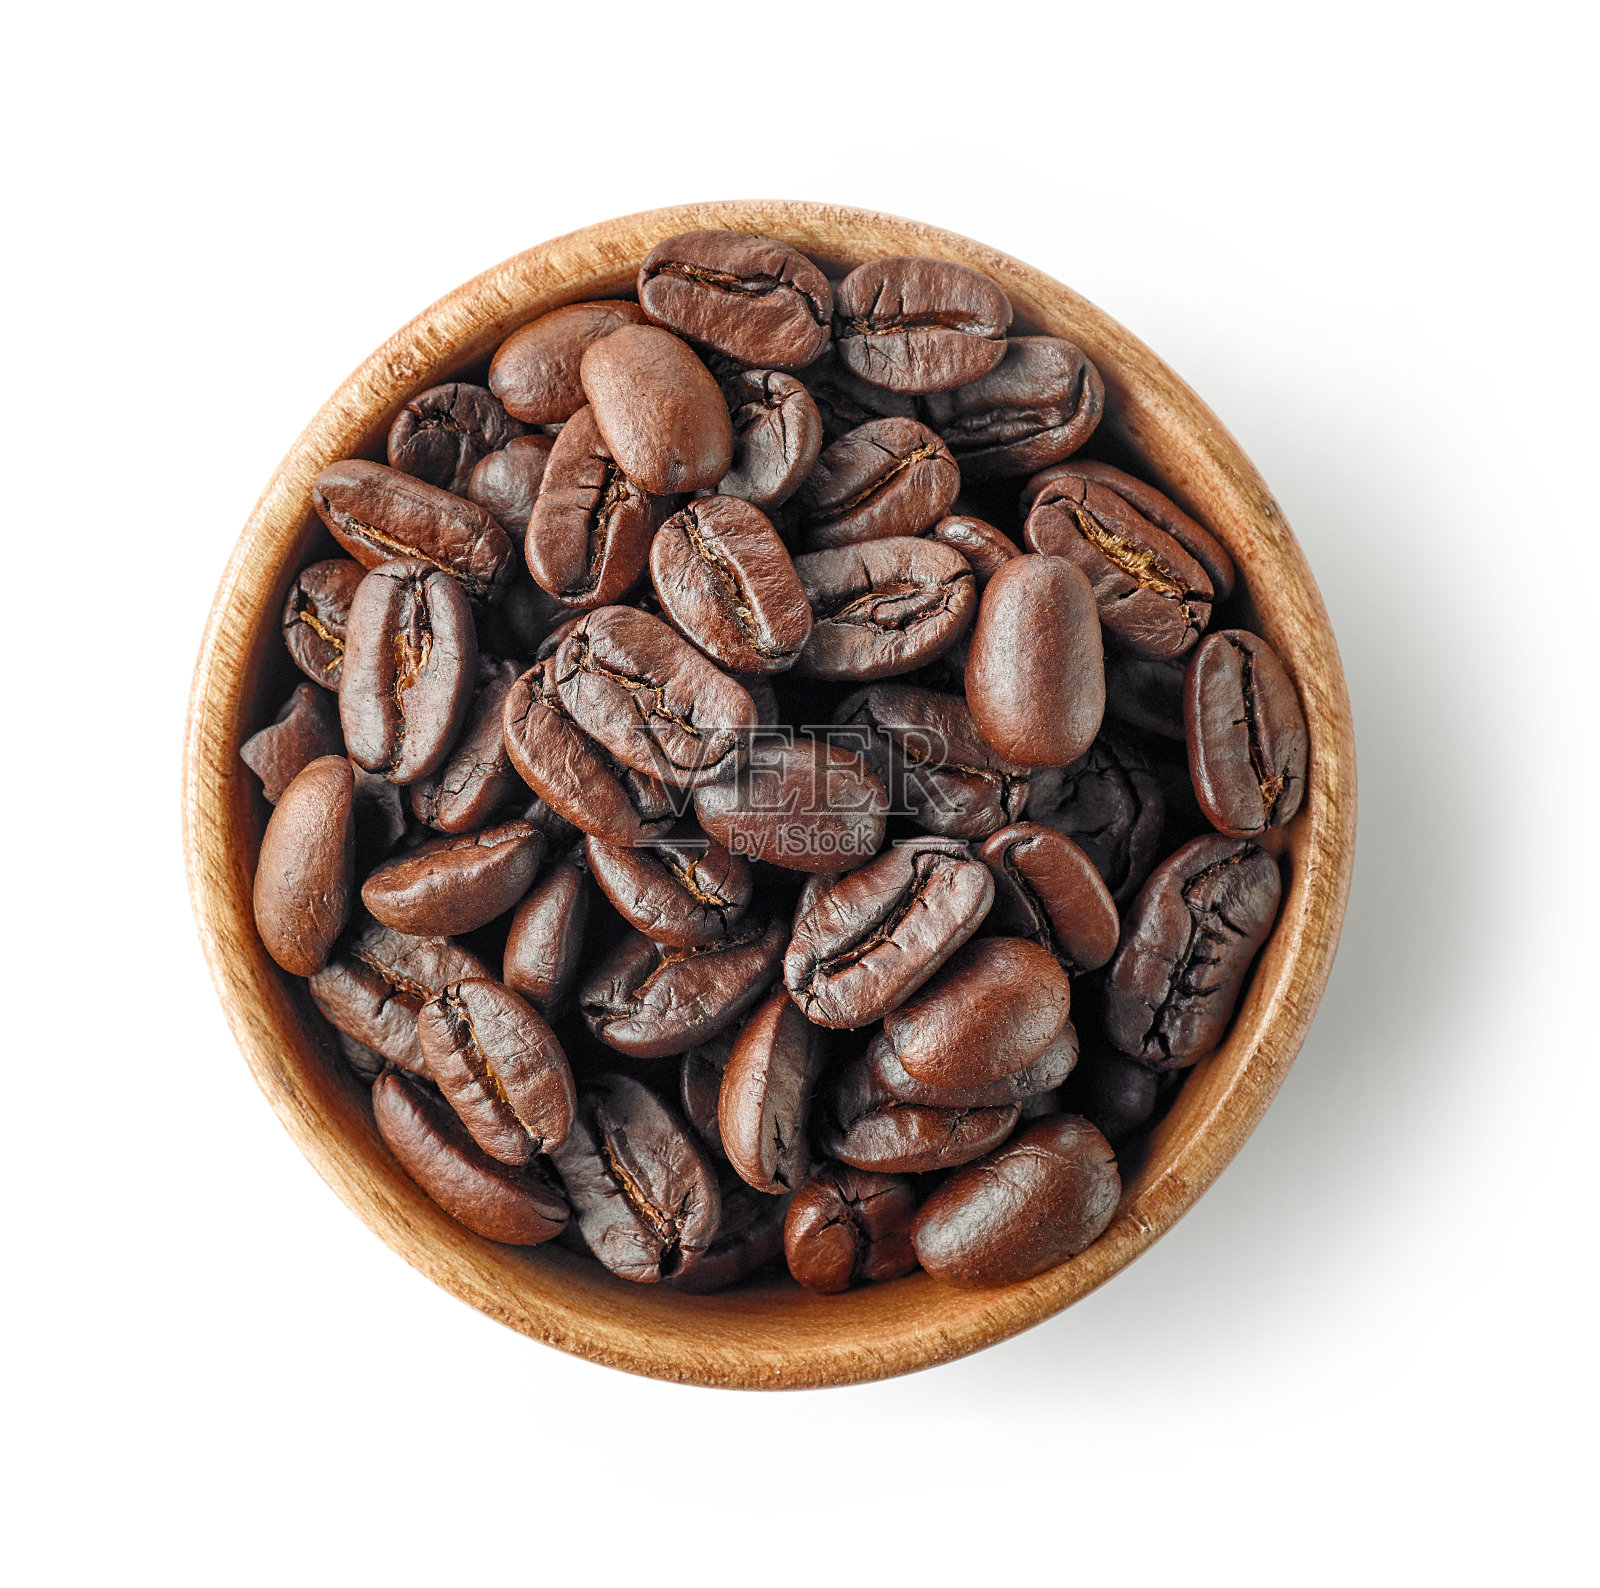 装咖啡豆的木碗照片摄影图片